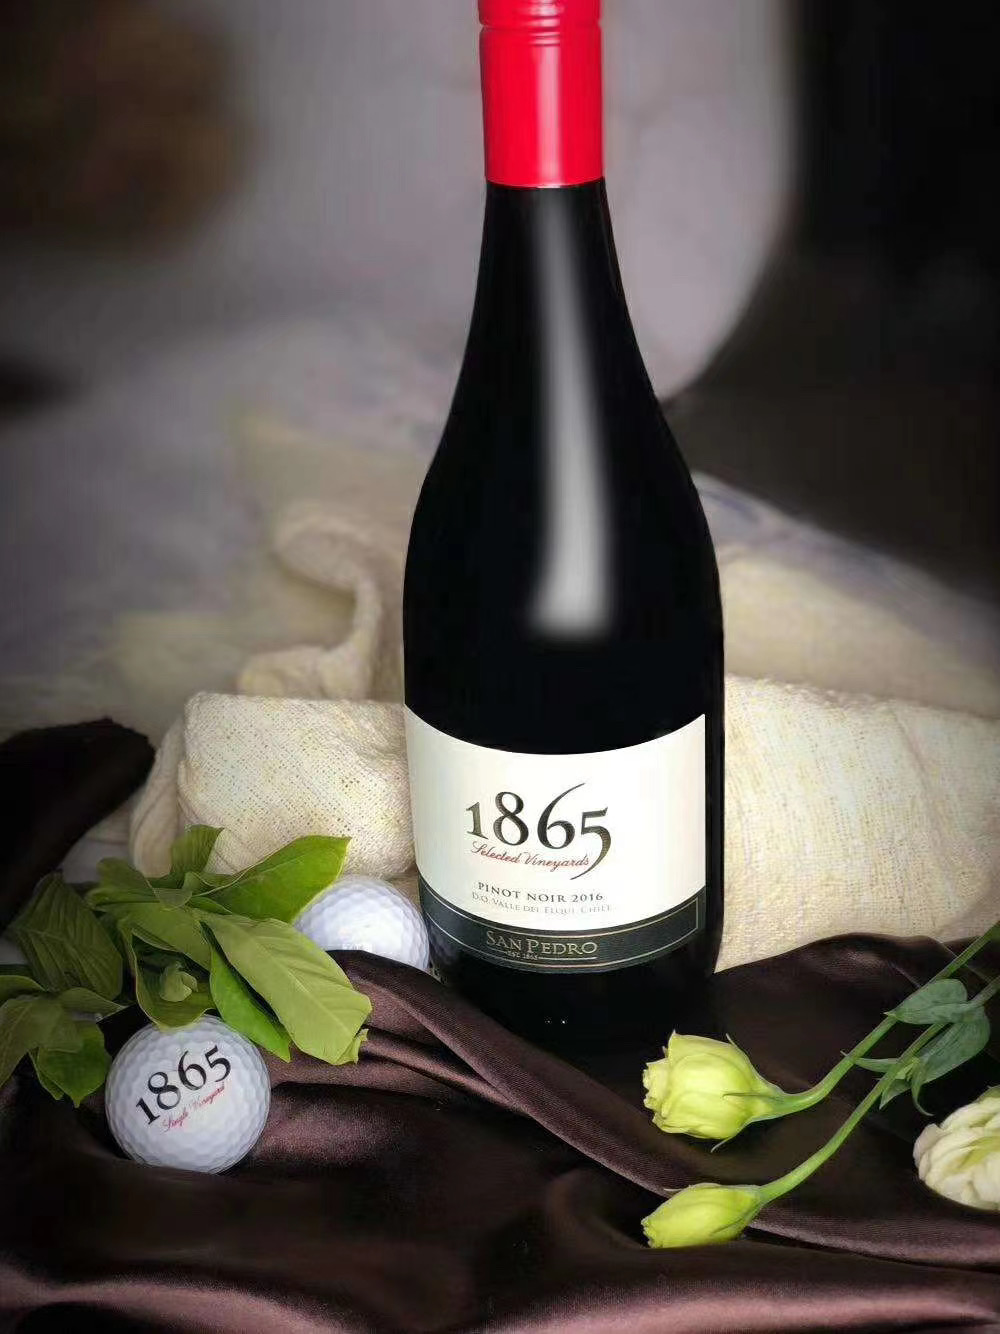 1865卡曼尼红葡萄酒代理商 圣佩特罗San Pedro 1865沙漠西拉红葡萄酒